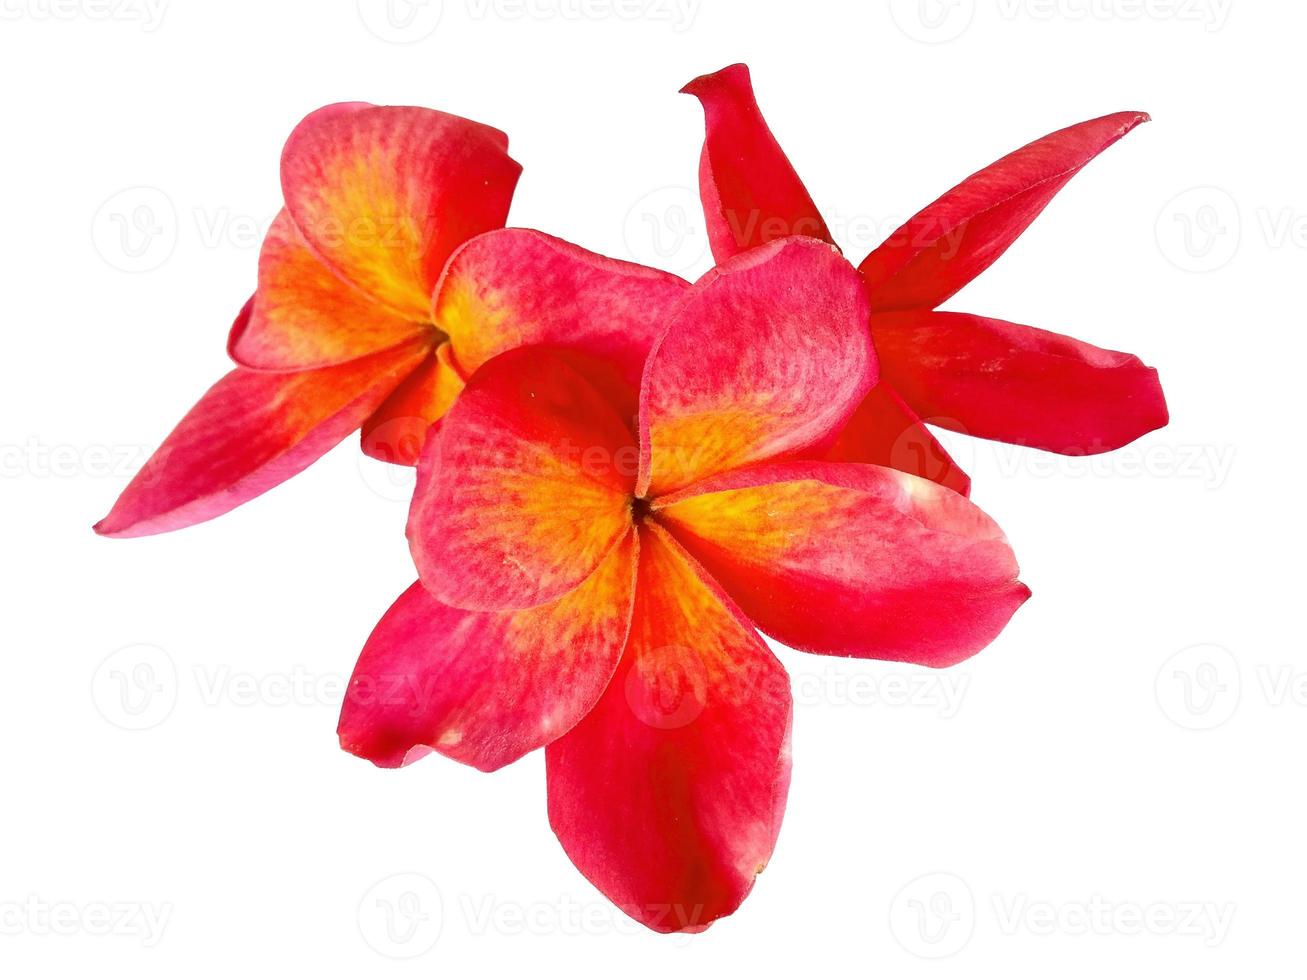 plumeria vermelha ou flor de frangipani isolada no fundo branco foto